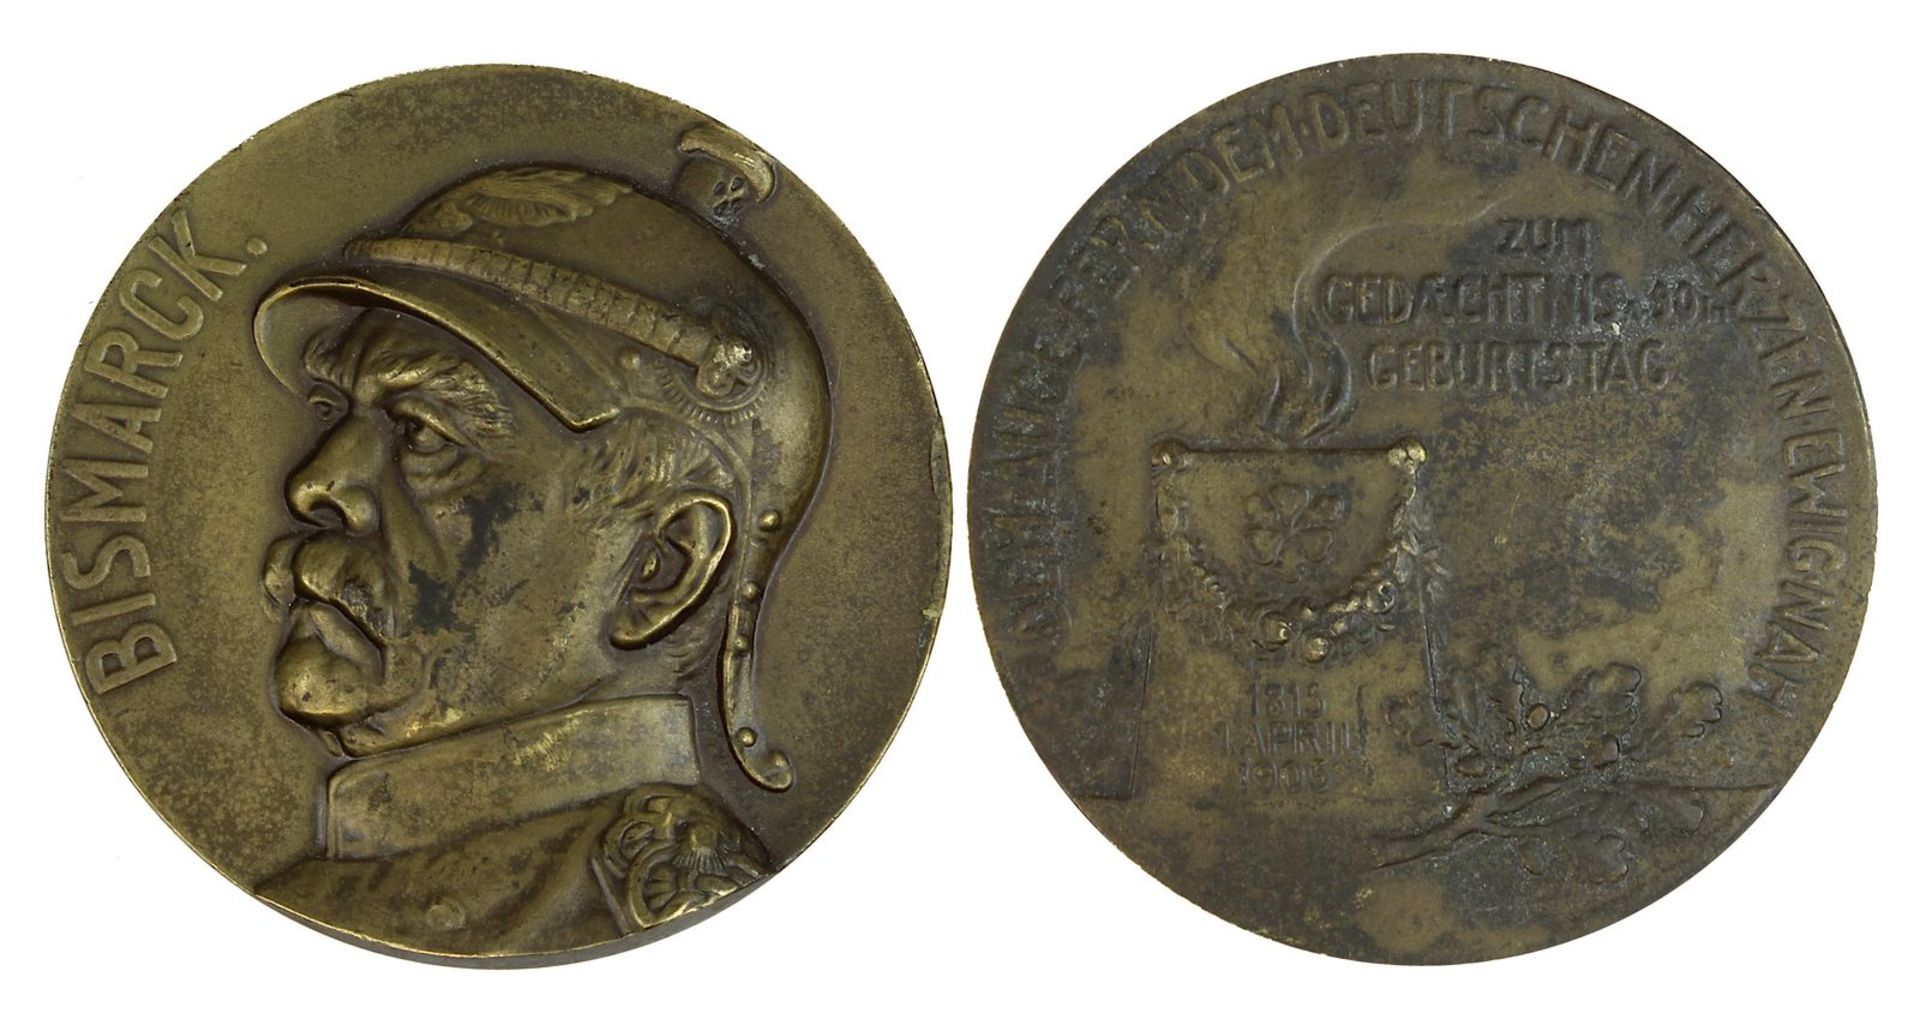 Bismarck-Medaille, Deutsches Reich 1905, zum 90. Geburtstag von Otto von Bismarck 1905, D: 6 cm,